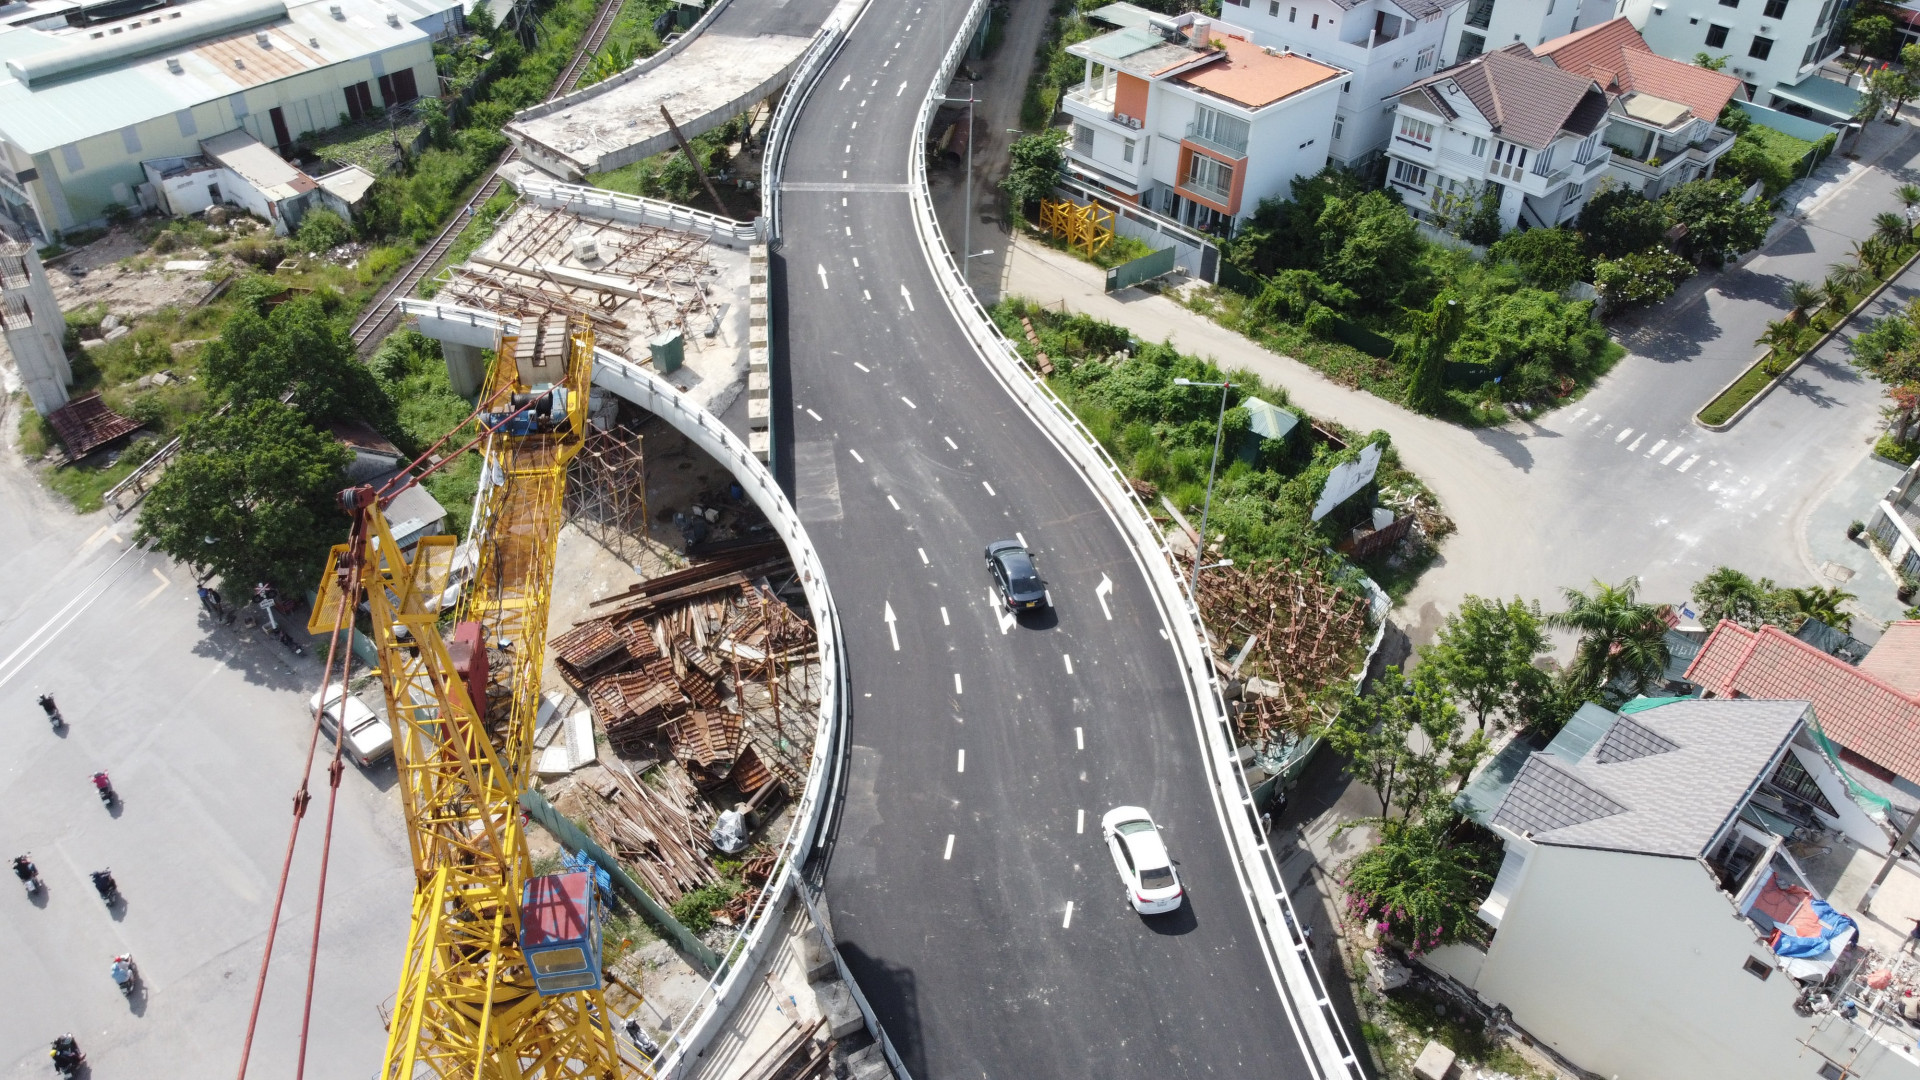 Dự án nút giao thông Ngọc Hội tổng vốn 1.250 tỷ đồng là một trong những dự án giao thông quan trọng tại TP Nha Trang, tỉnh Khánh Hòa, do Công ty Cổ phần Đầu tư Phúc Sơn làm chủ đầu tư.